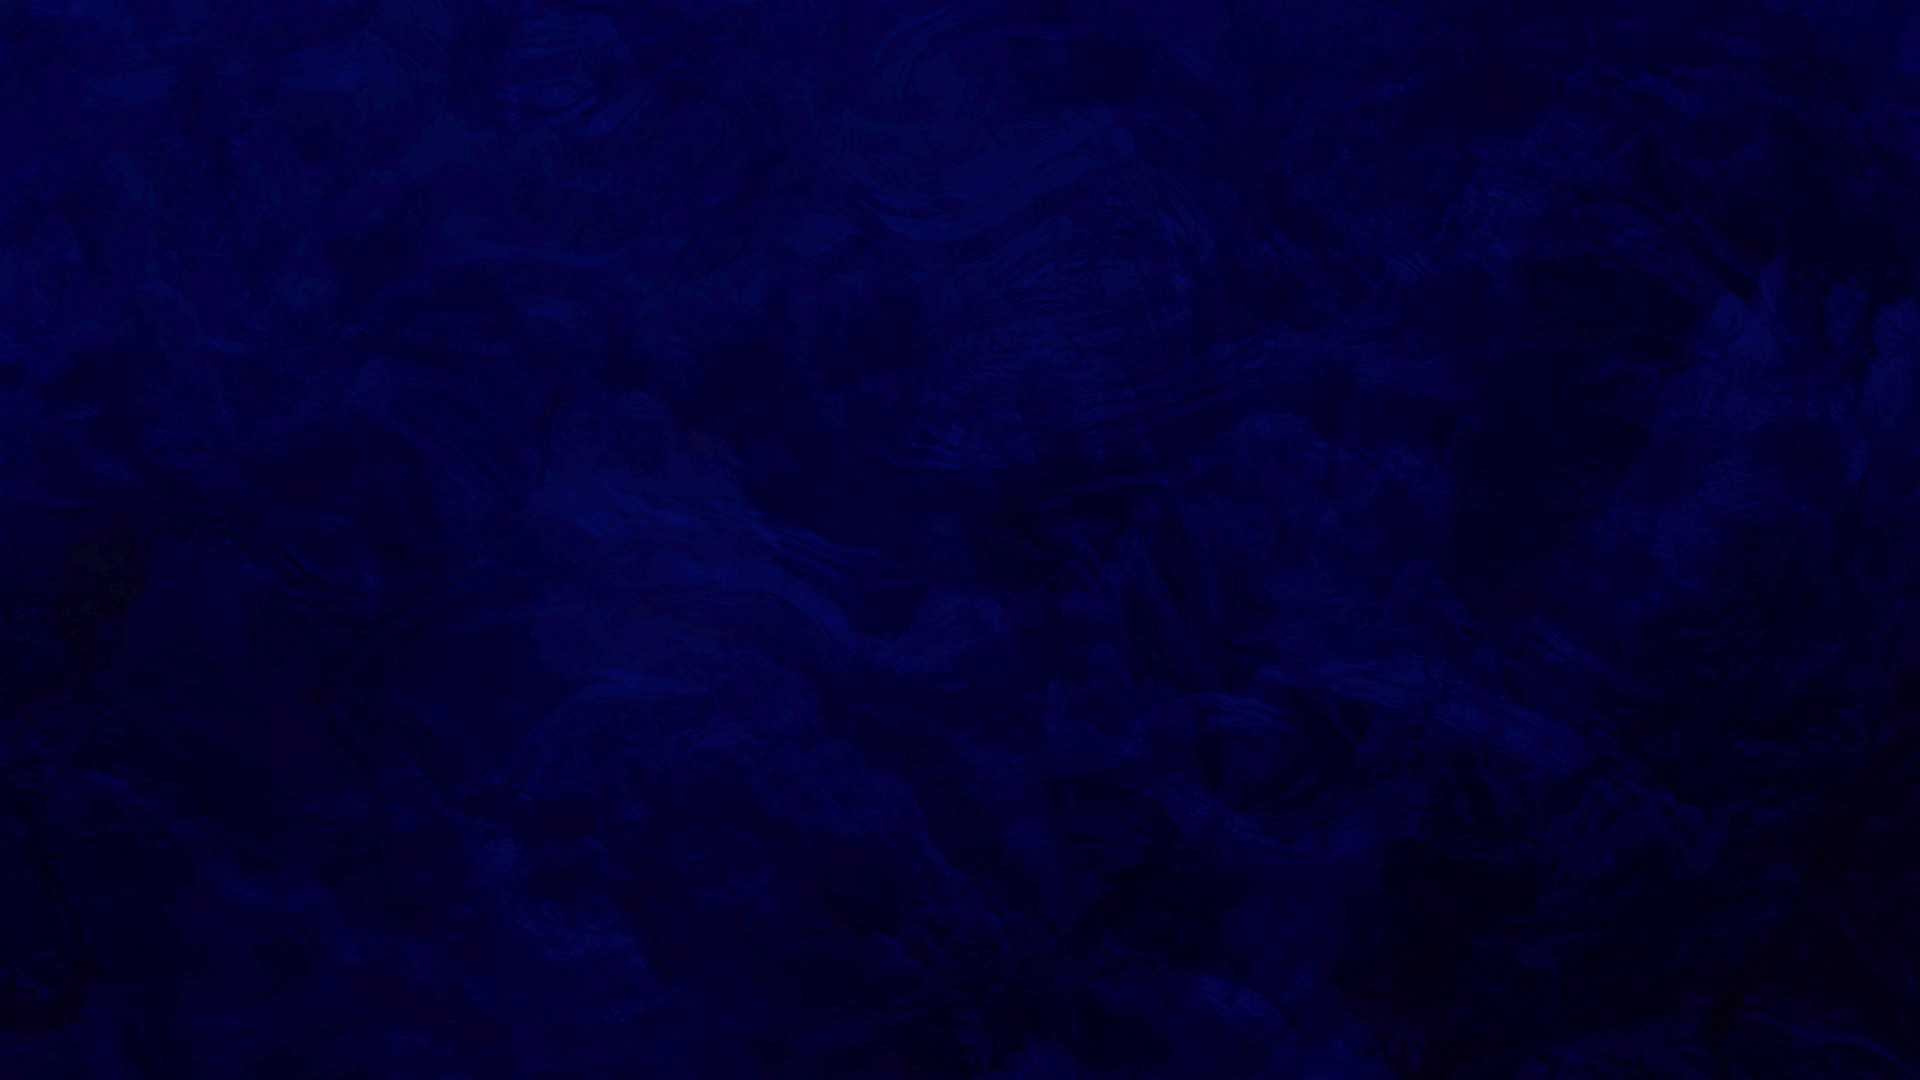 dark blue texture background